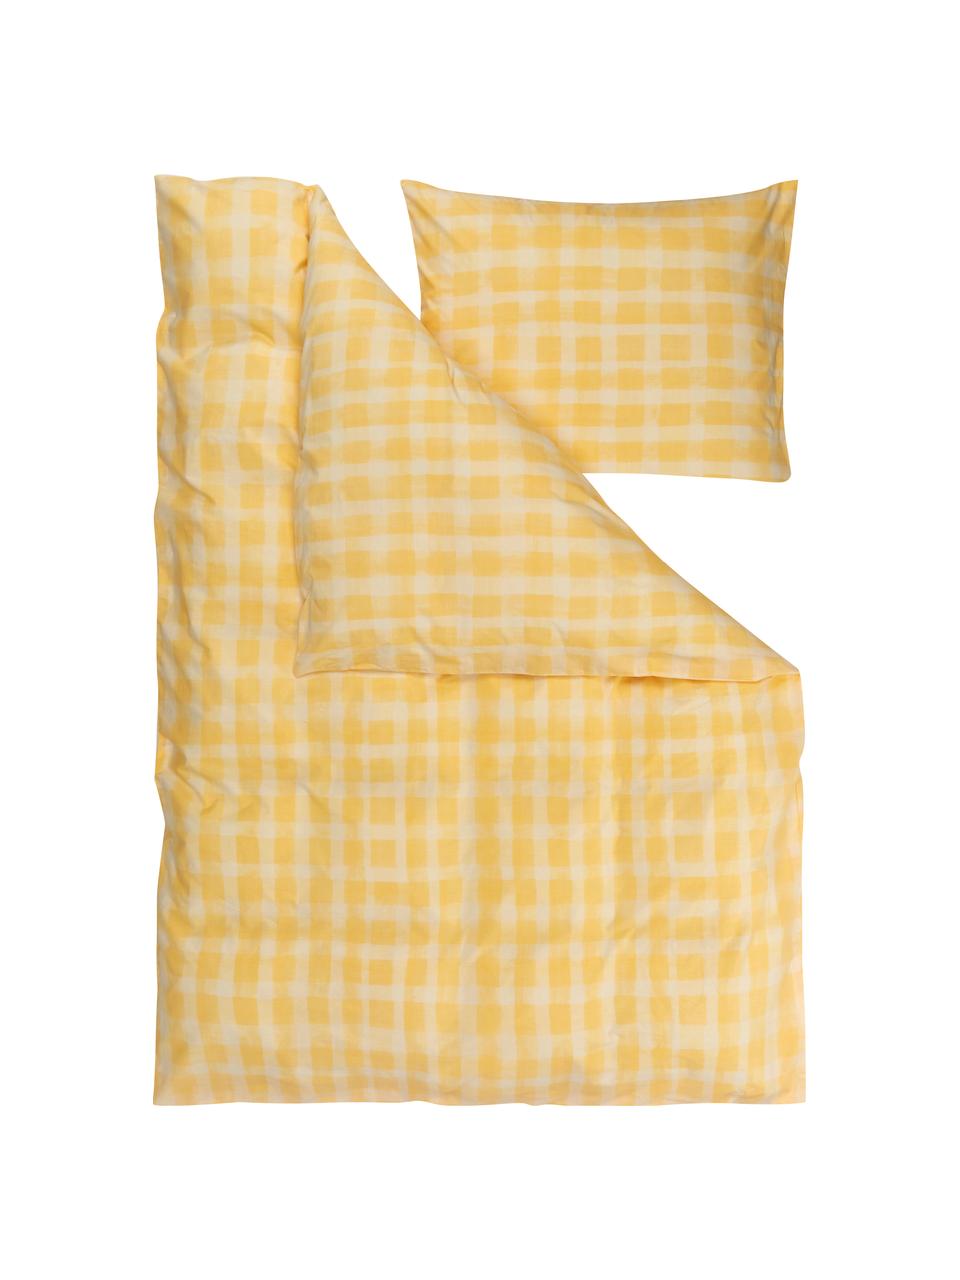 Biancheria da letto di design di Candice Gray in cotone percalle Milène, Tonalità gialle, a scacchi, 155 x 200 cm + 1 federa 50 x 80 cm